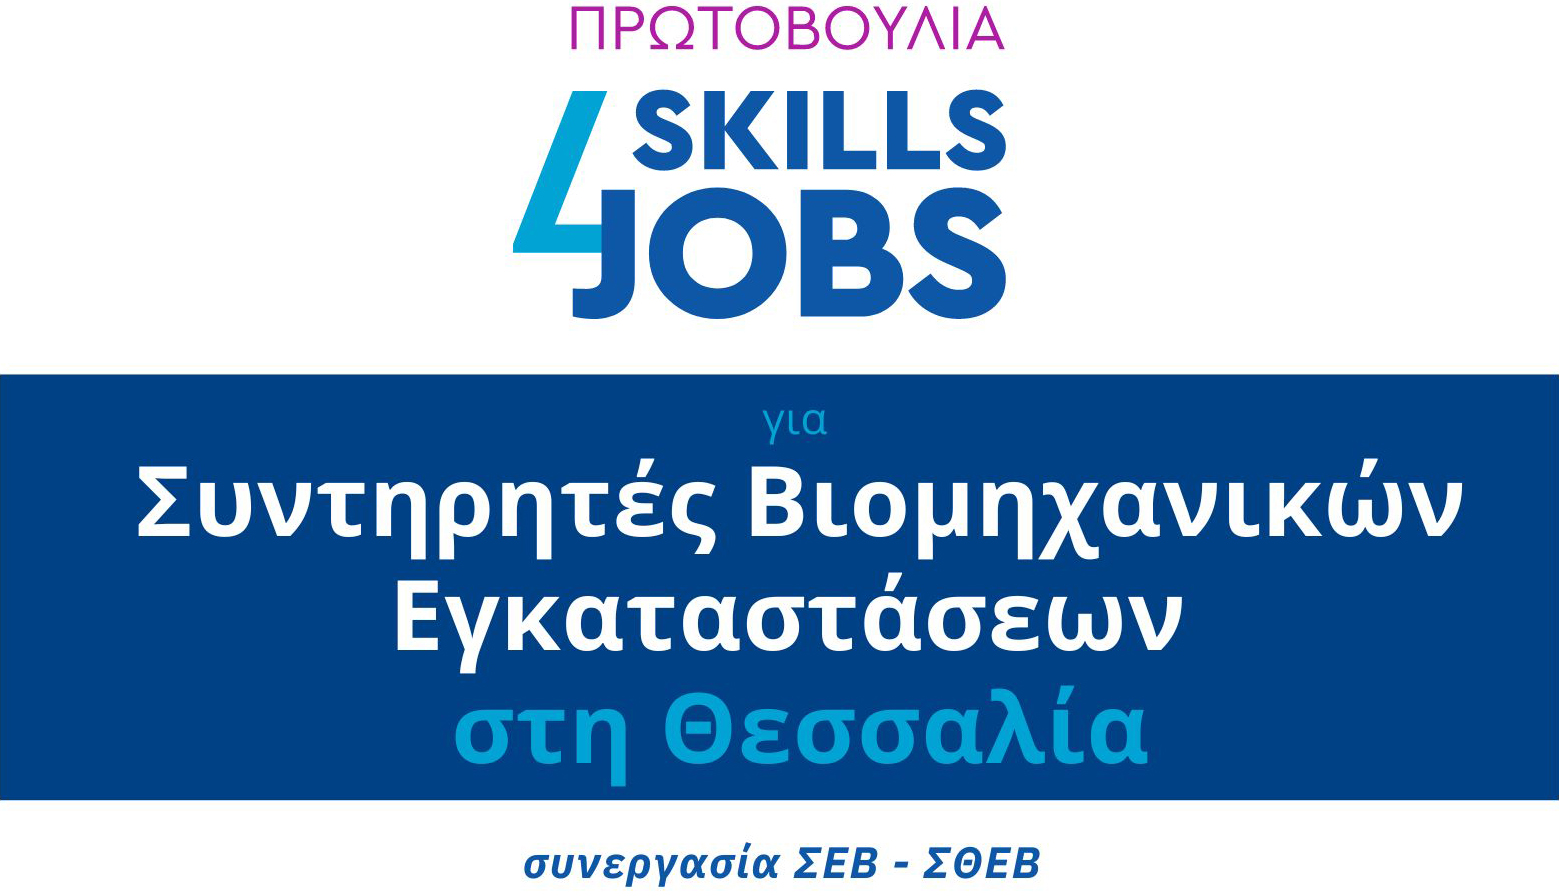 Συντηρητές Βιομηχανικών Εγκαταστάσεων: Αιτήσεις για τη δράση κατάρτισης και απασχόλησης «Skills4Jobs» ΣΘΕΒ και ΣΕΒ